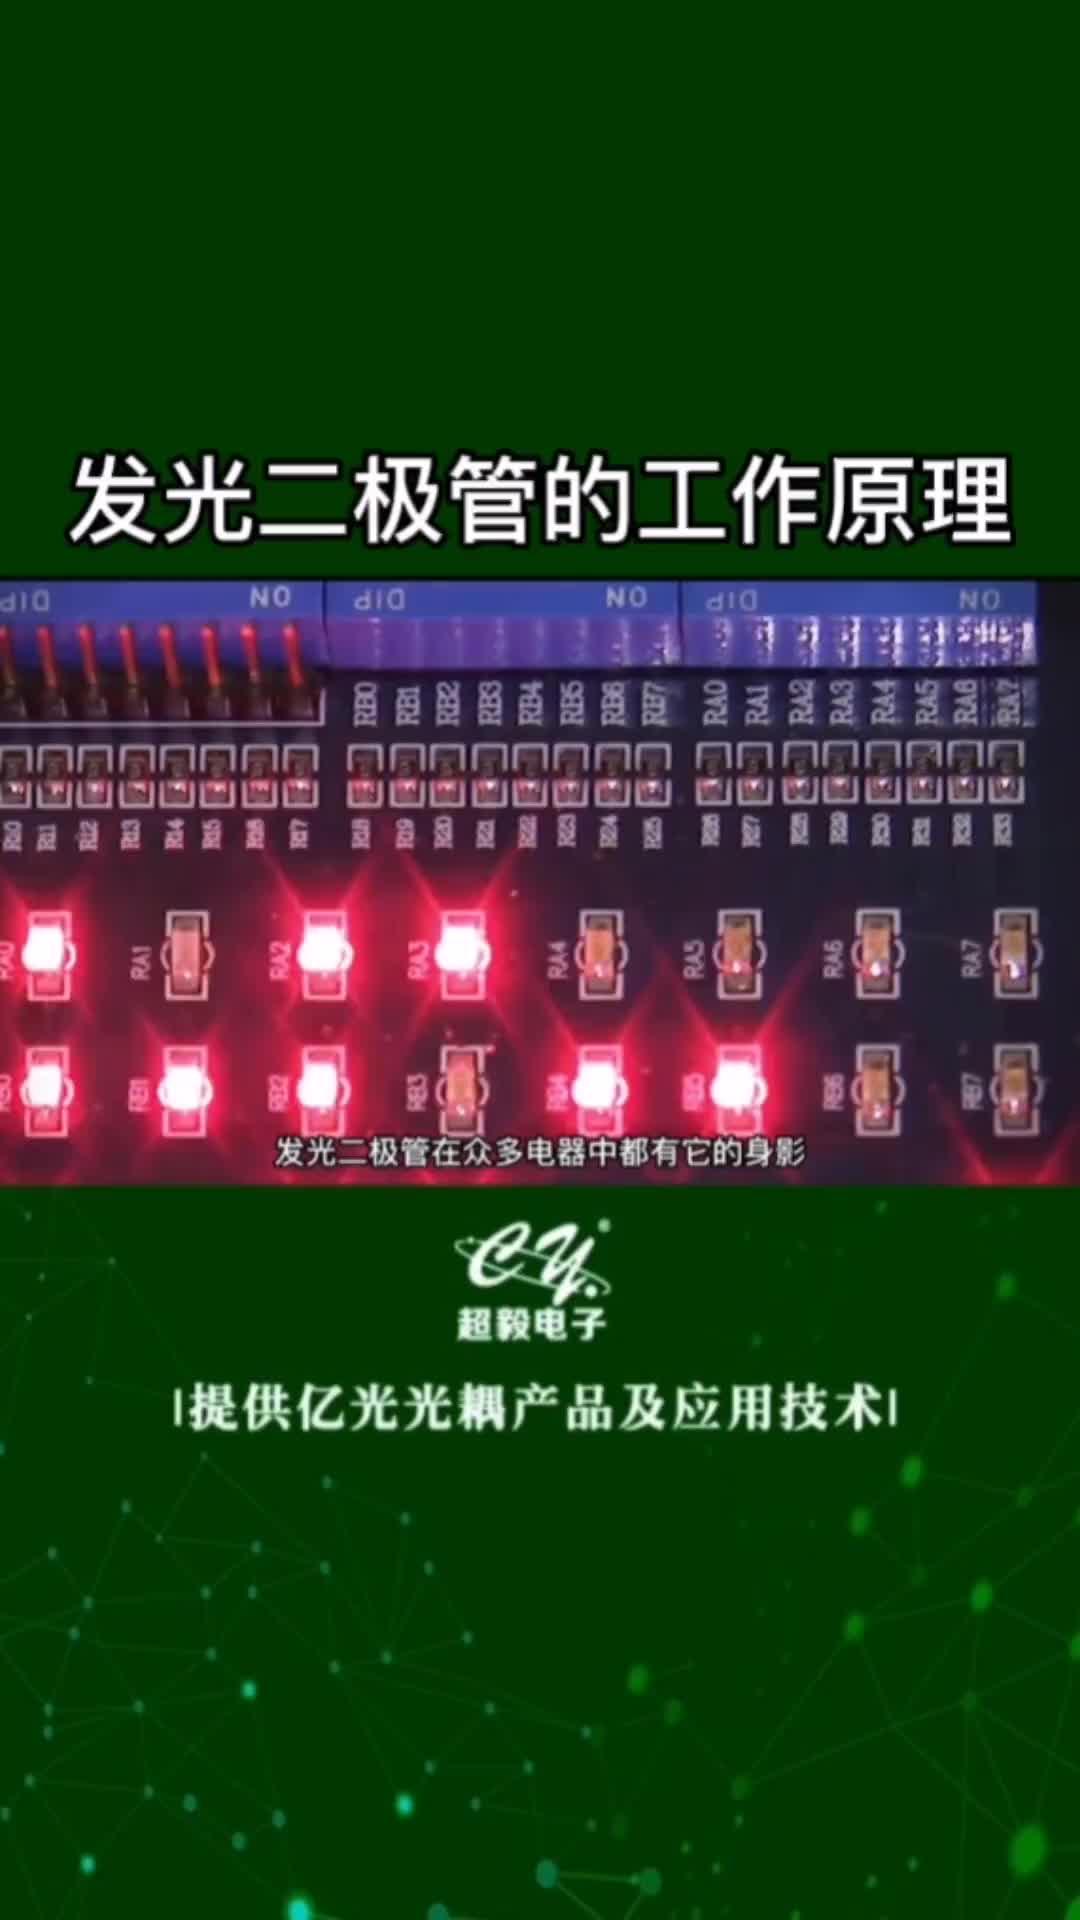 00038 发光二极管工作原理#电子元器件 #led灯 #国产芯片替换避坑指南 